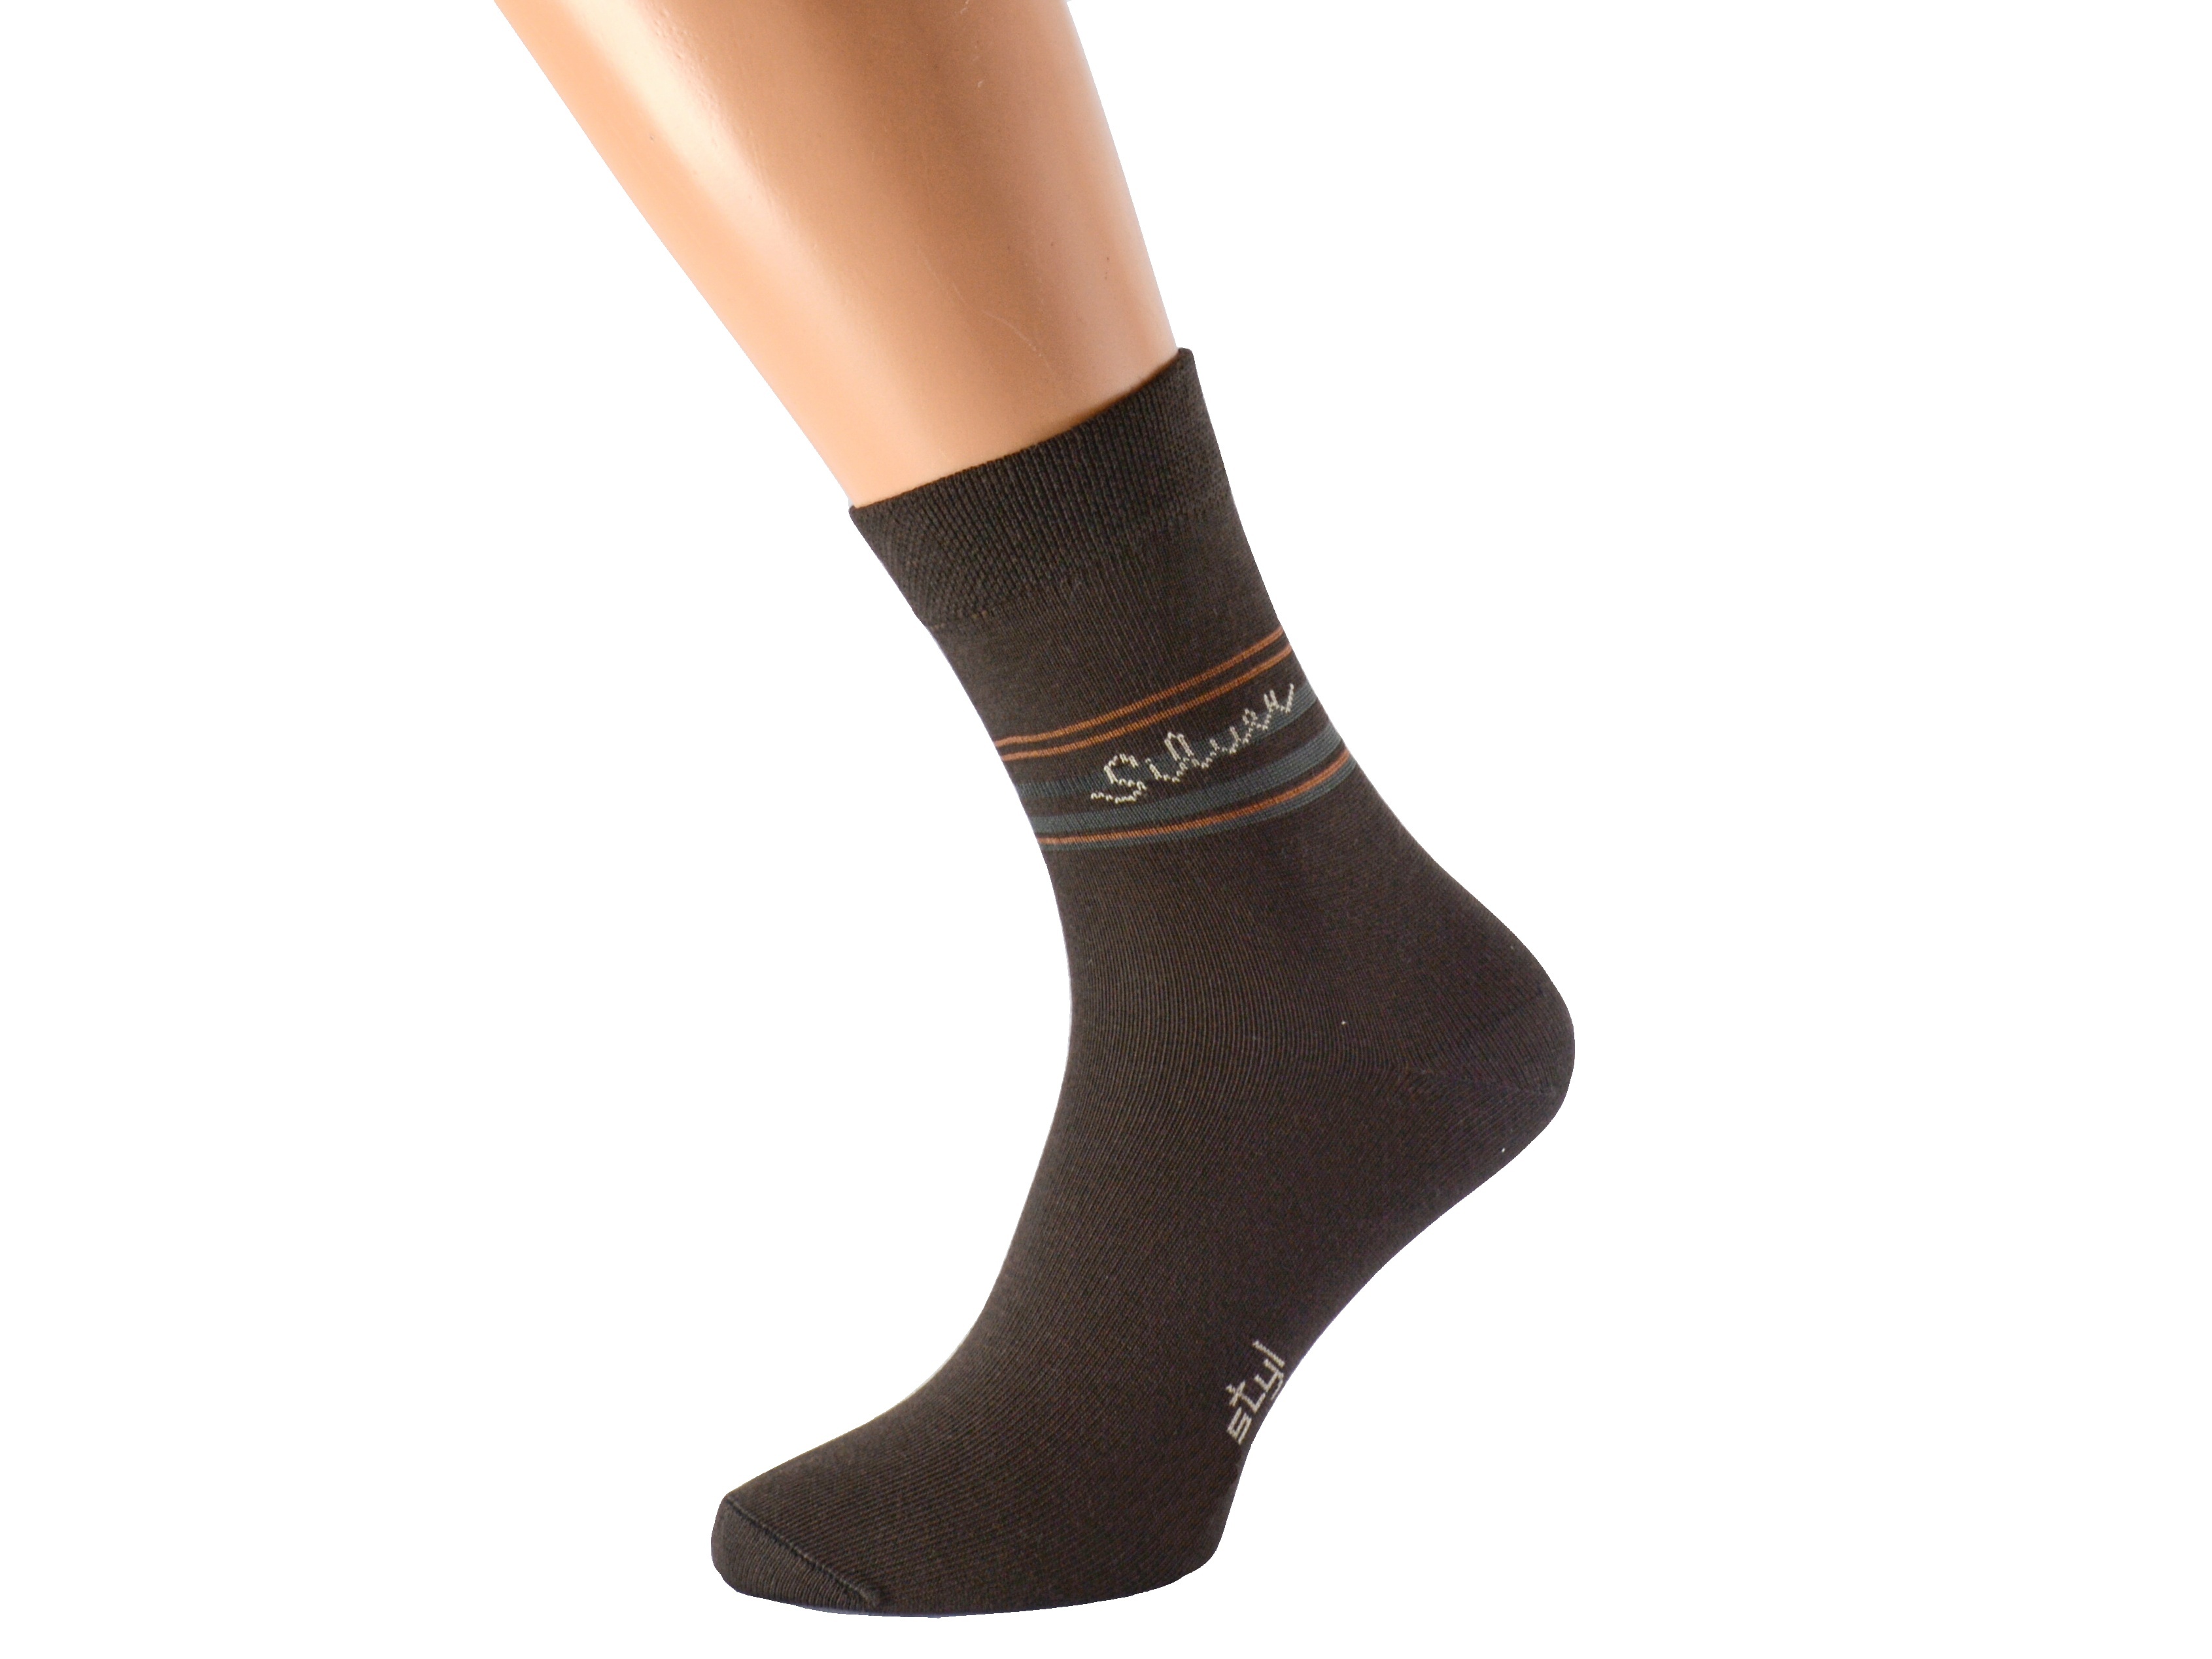 Antibakteriální ponožky proti pocení SILVER KUKS Barva: Hnědé, Velikost: EUR 41-42 (UK 7-8)